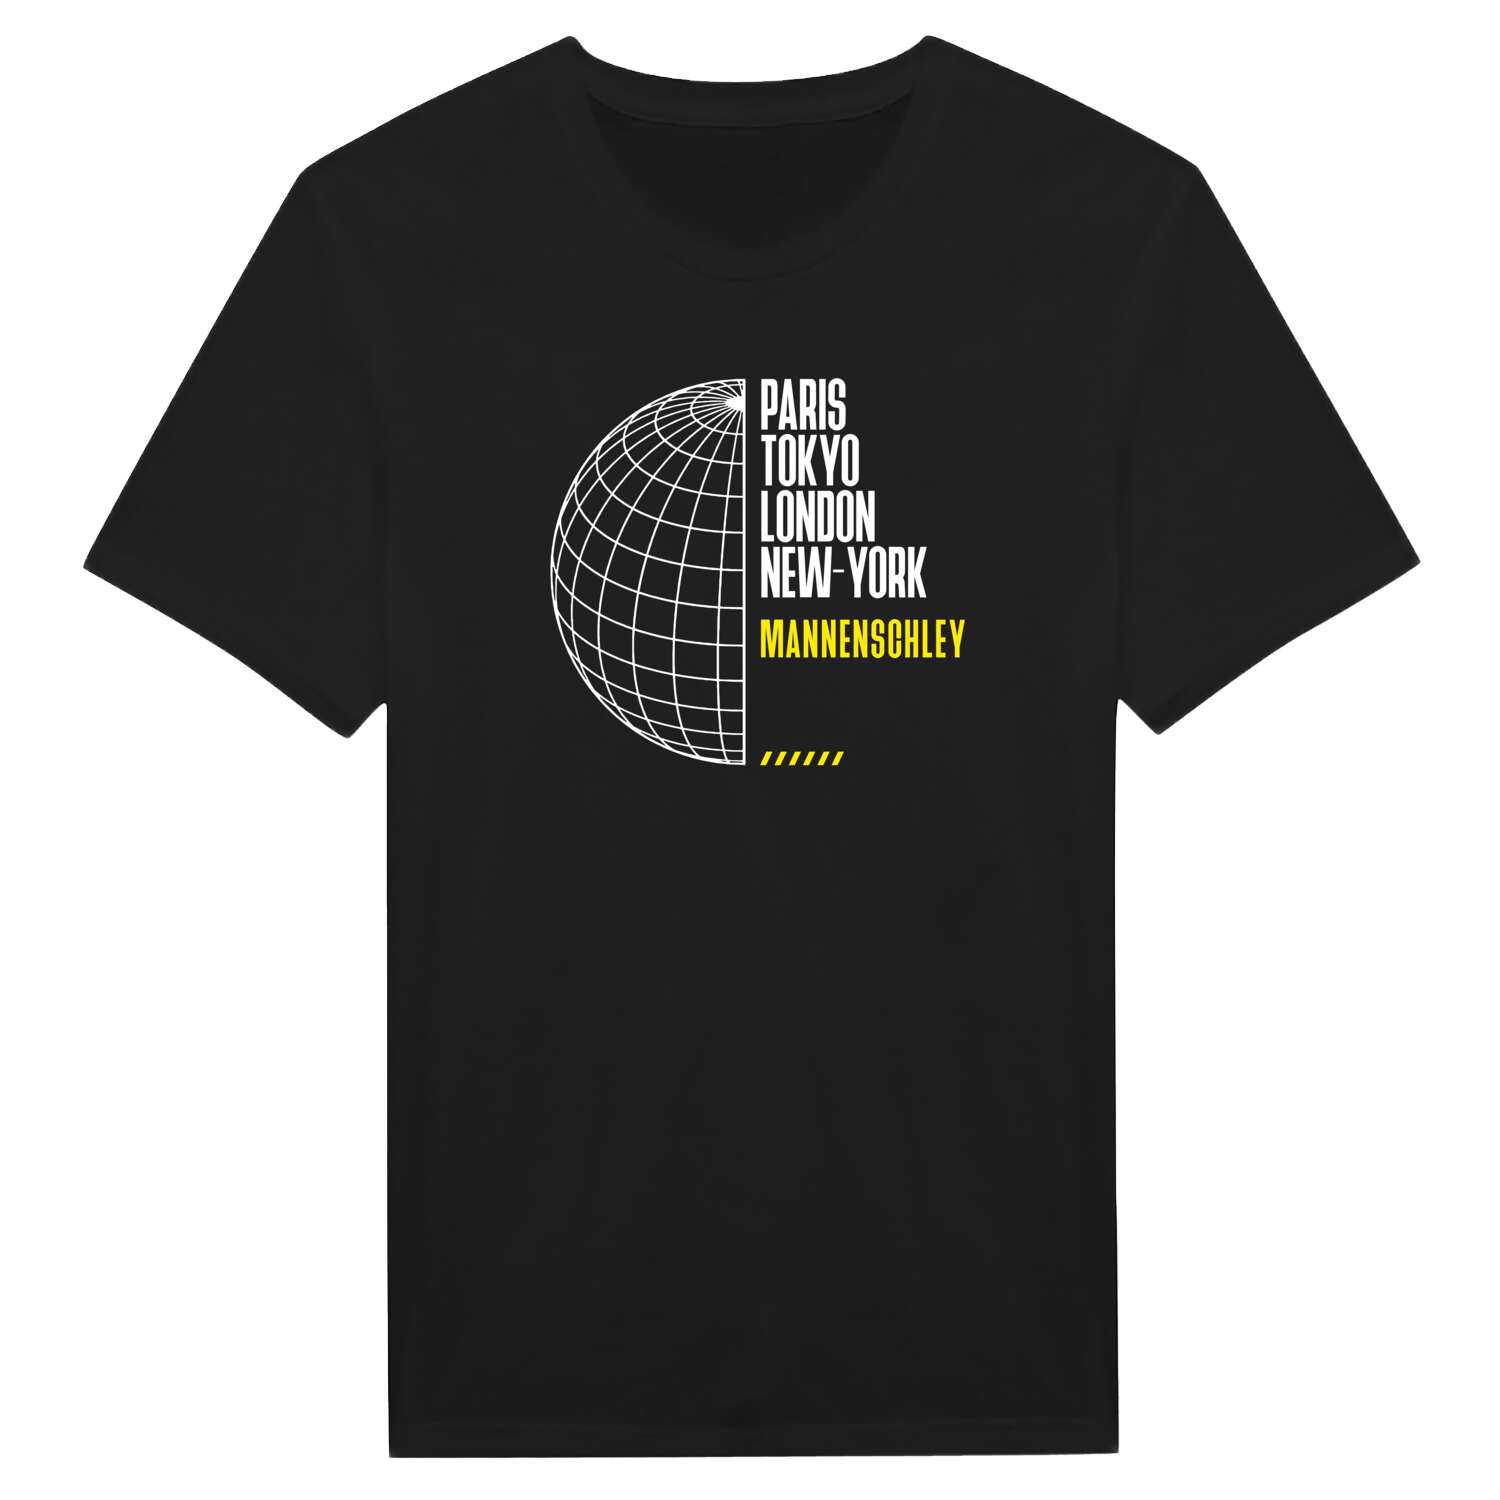 Mannenschley T-Shirt »Paris Tokyo London«